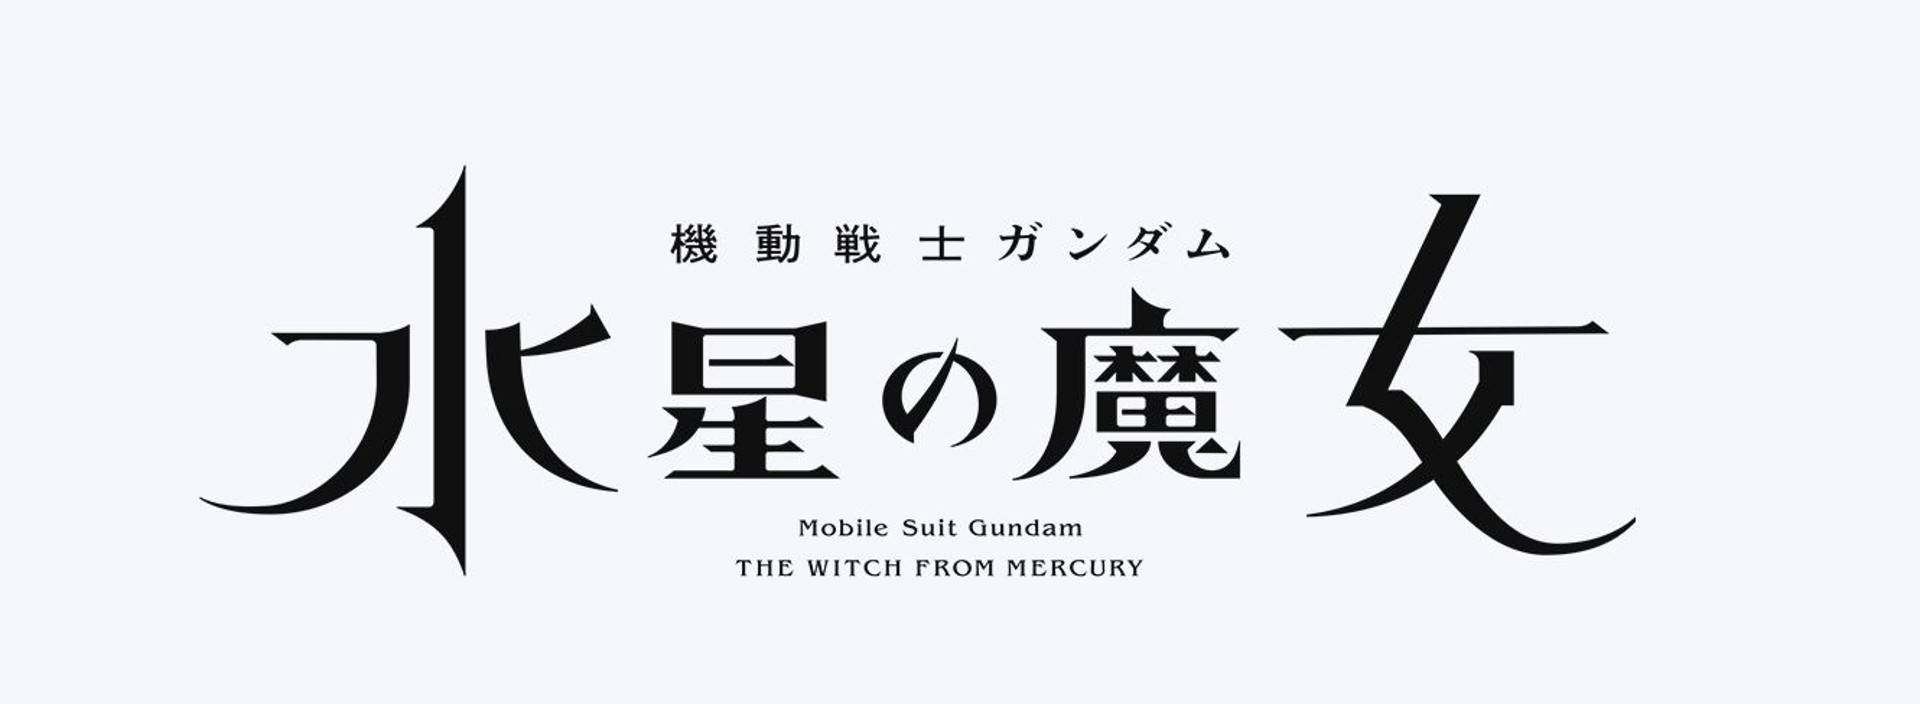 Mobile Suit Gundam ภาคใหม่จะกลับมาฉายทางทีวีอีกครั้ง หลังจากหายไป 7 ปี